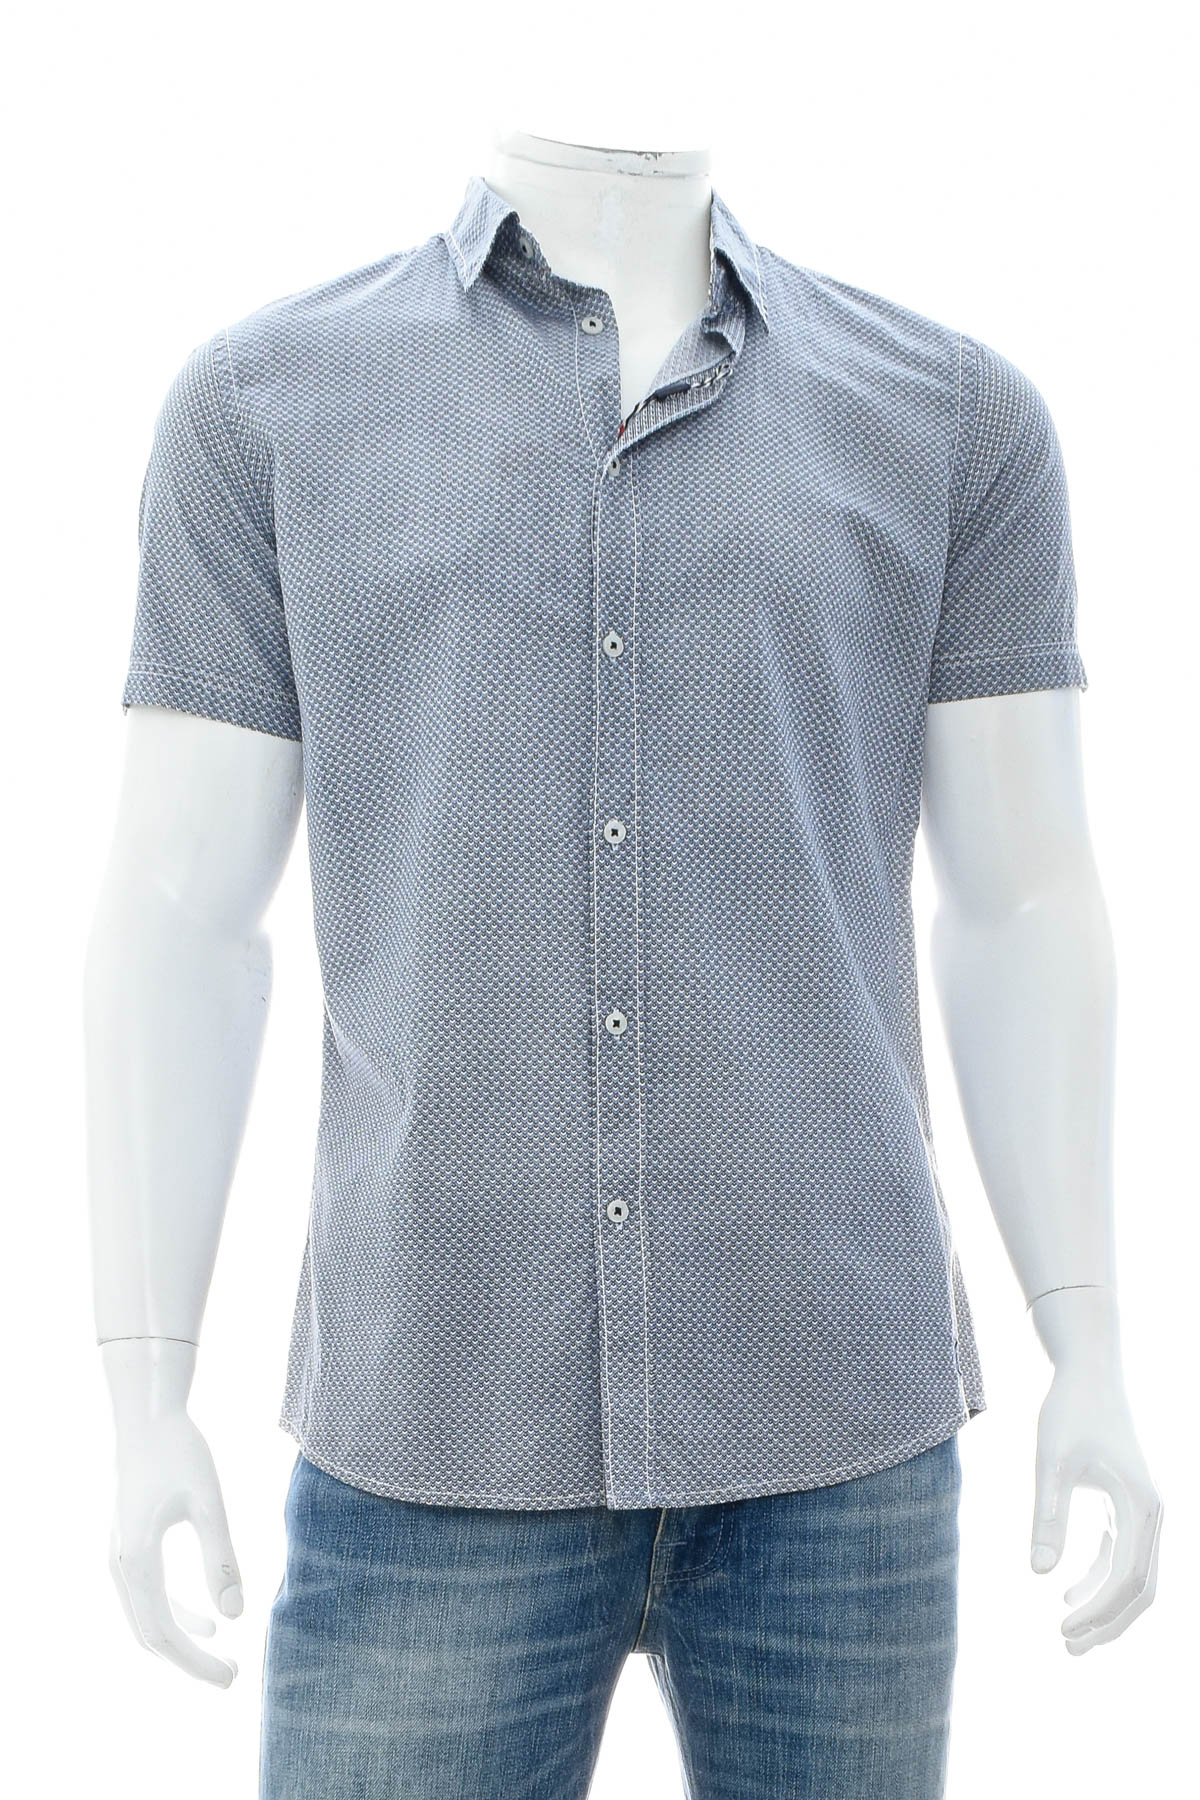 Ανδρικό πουκάμισο - RAY - 0